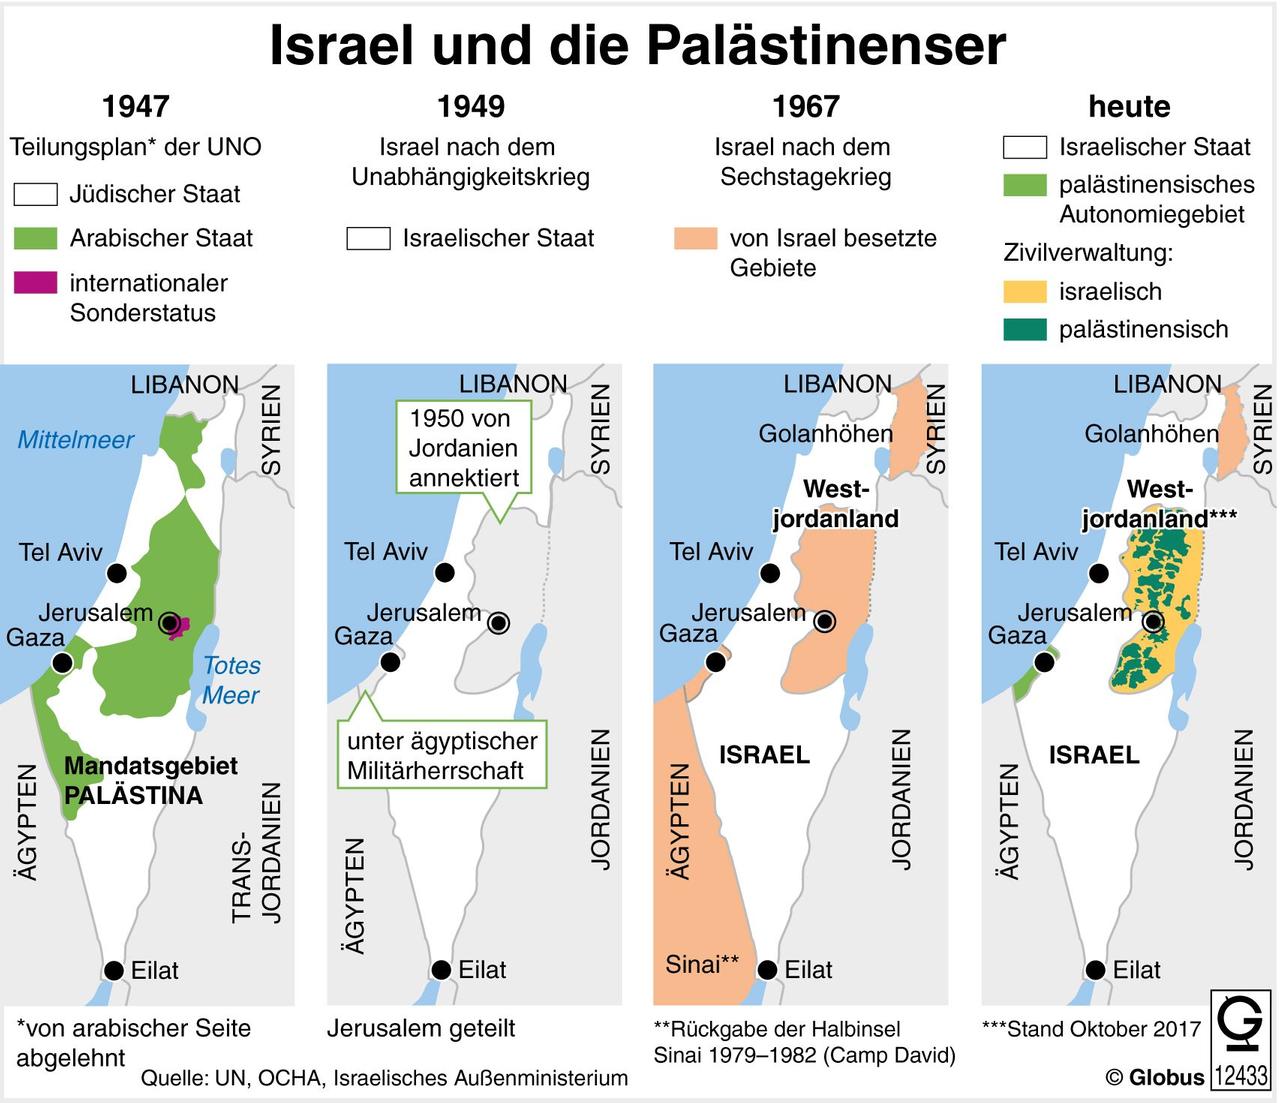 Auf einer Karte sind die Gebiete Israels und der Palästinenser von 1947 bis heute dargestellt